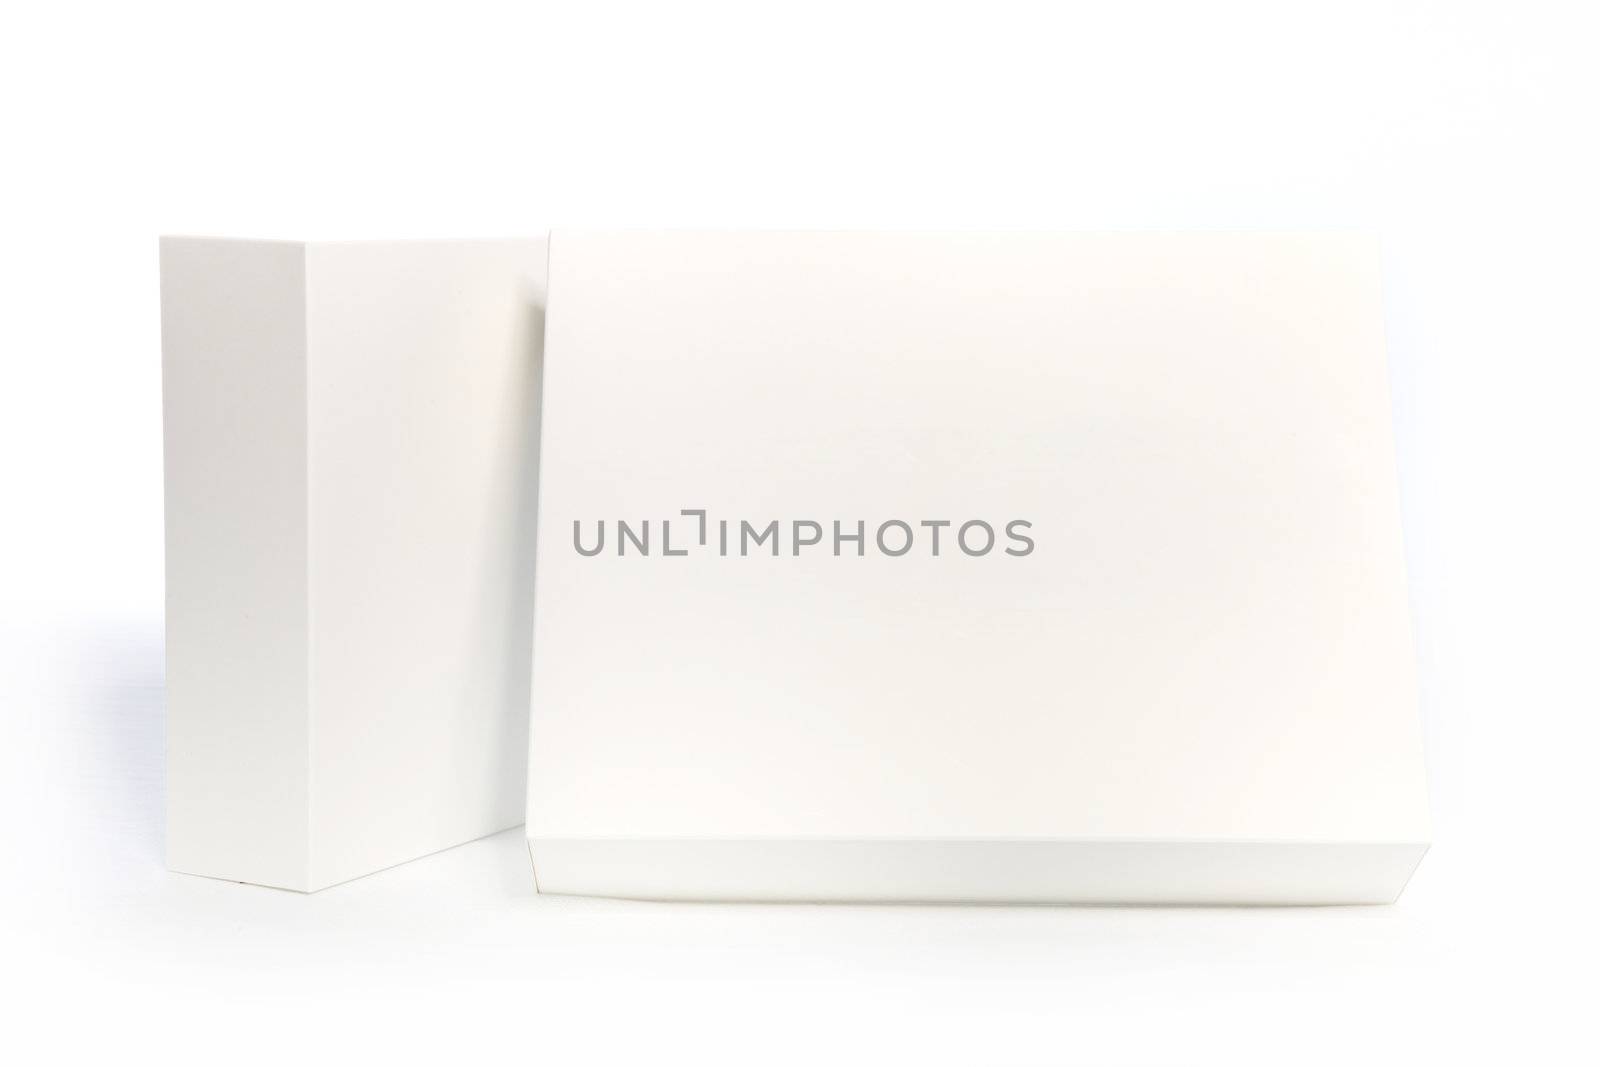 Rectangular white boxes on white background, closeup